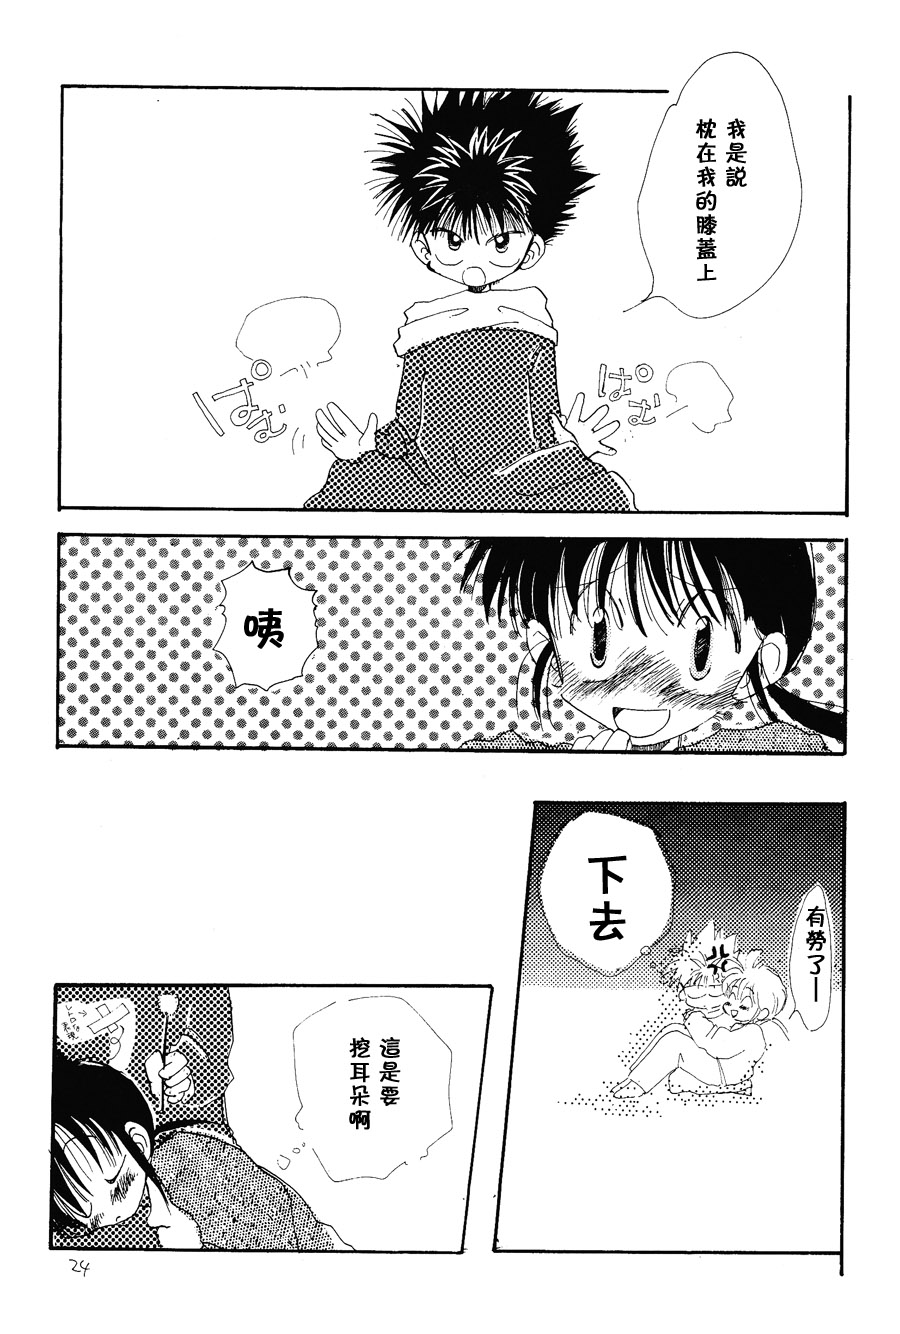 【漫画】PIKAPIKA/タカハシマコ《彩虹维奥莱塔》 Img_6890